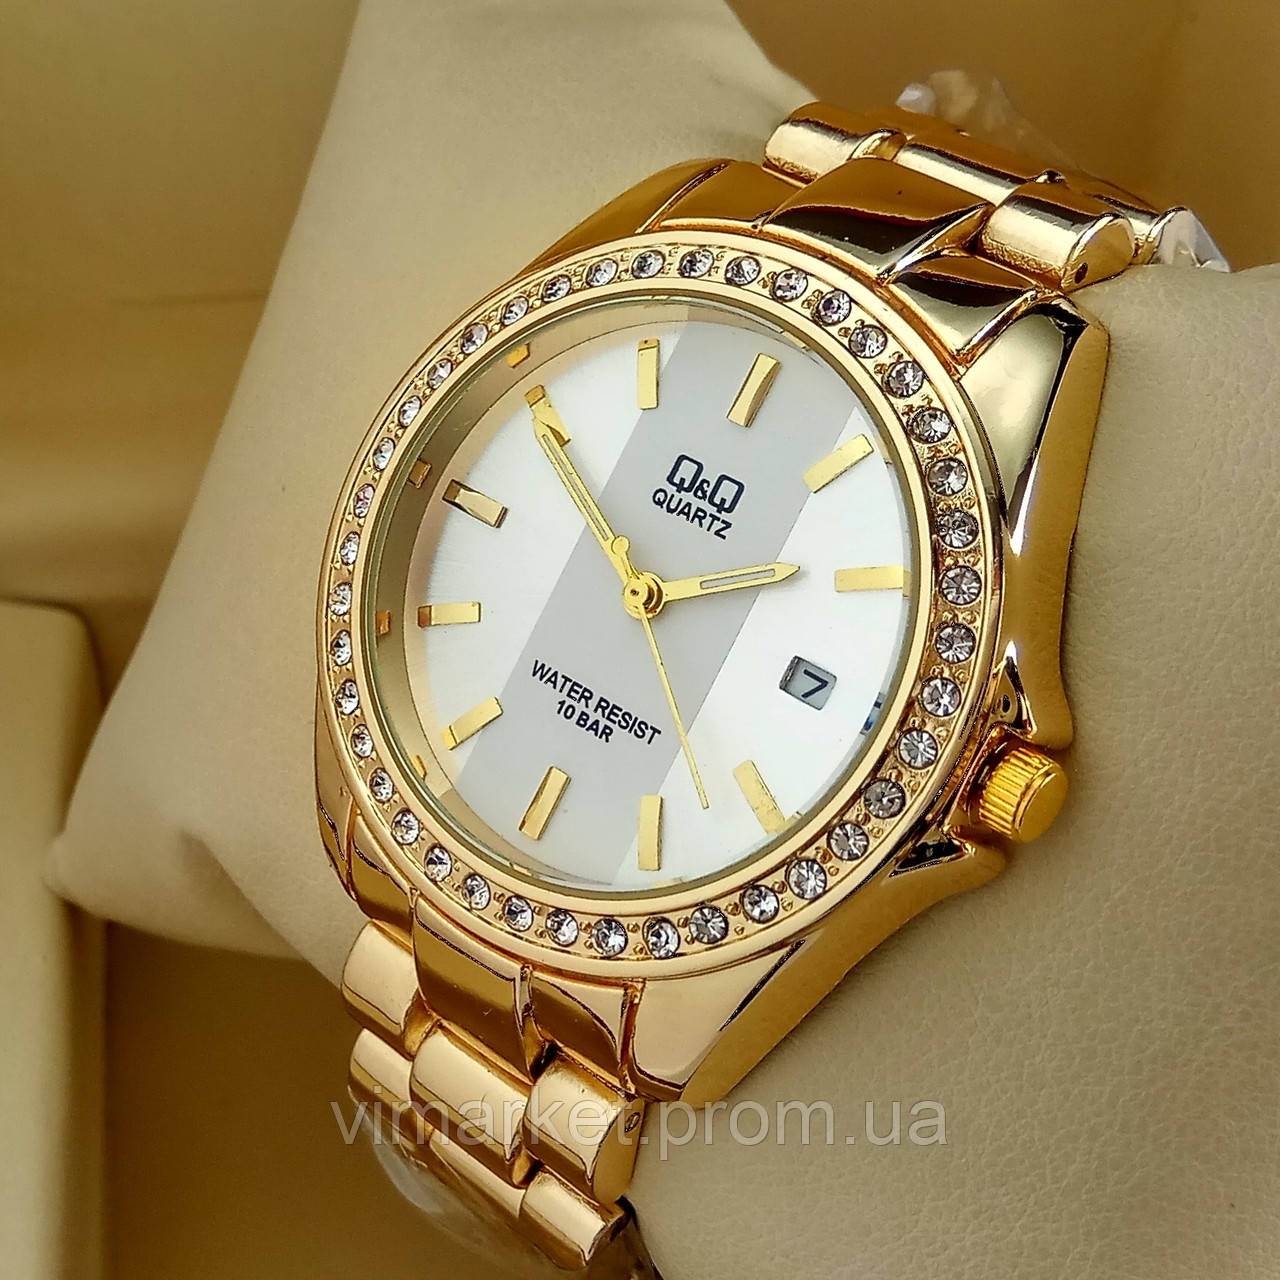 Жіночий наручний годинник Q&Q B129 (Кью Кью) на металевому браслеті золотого кольору срібний циферблат,з датою